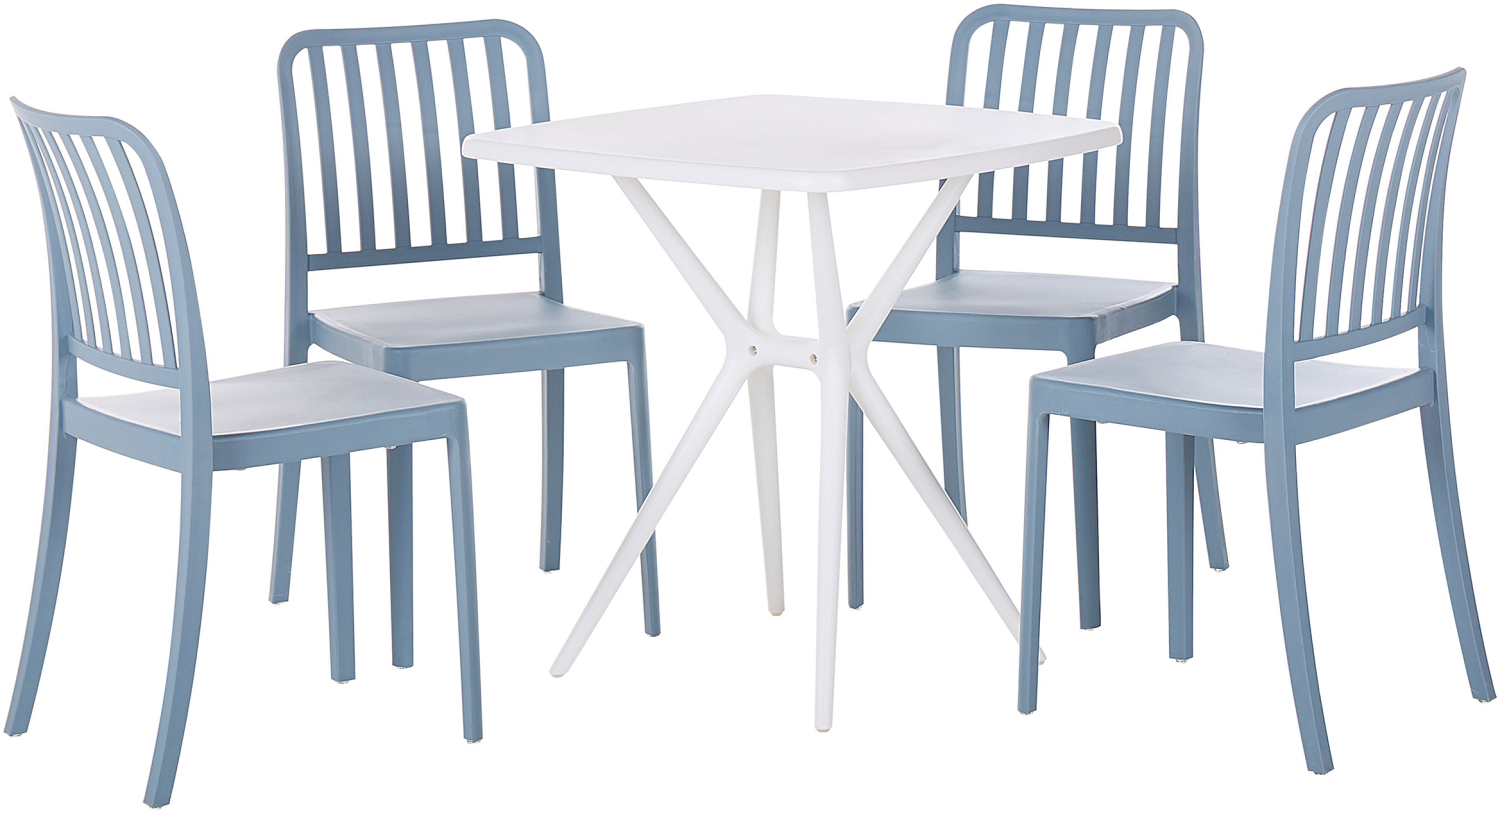 Gartenmöbel Set Kunststoff blau weiß 4-Sitzer SERSALE Bild 1